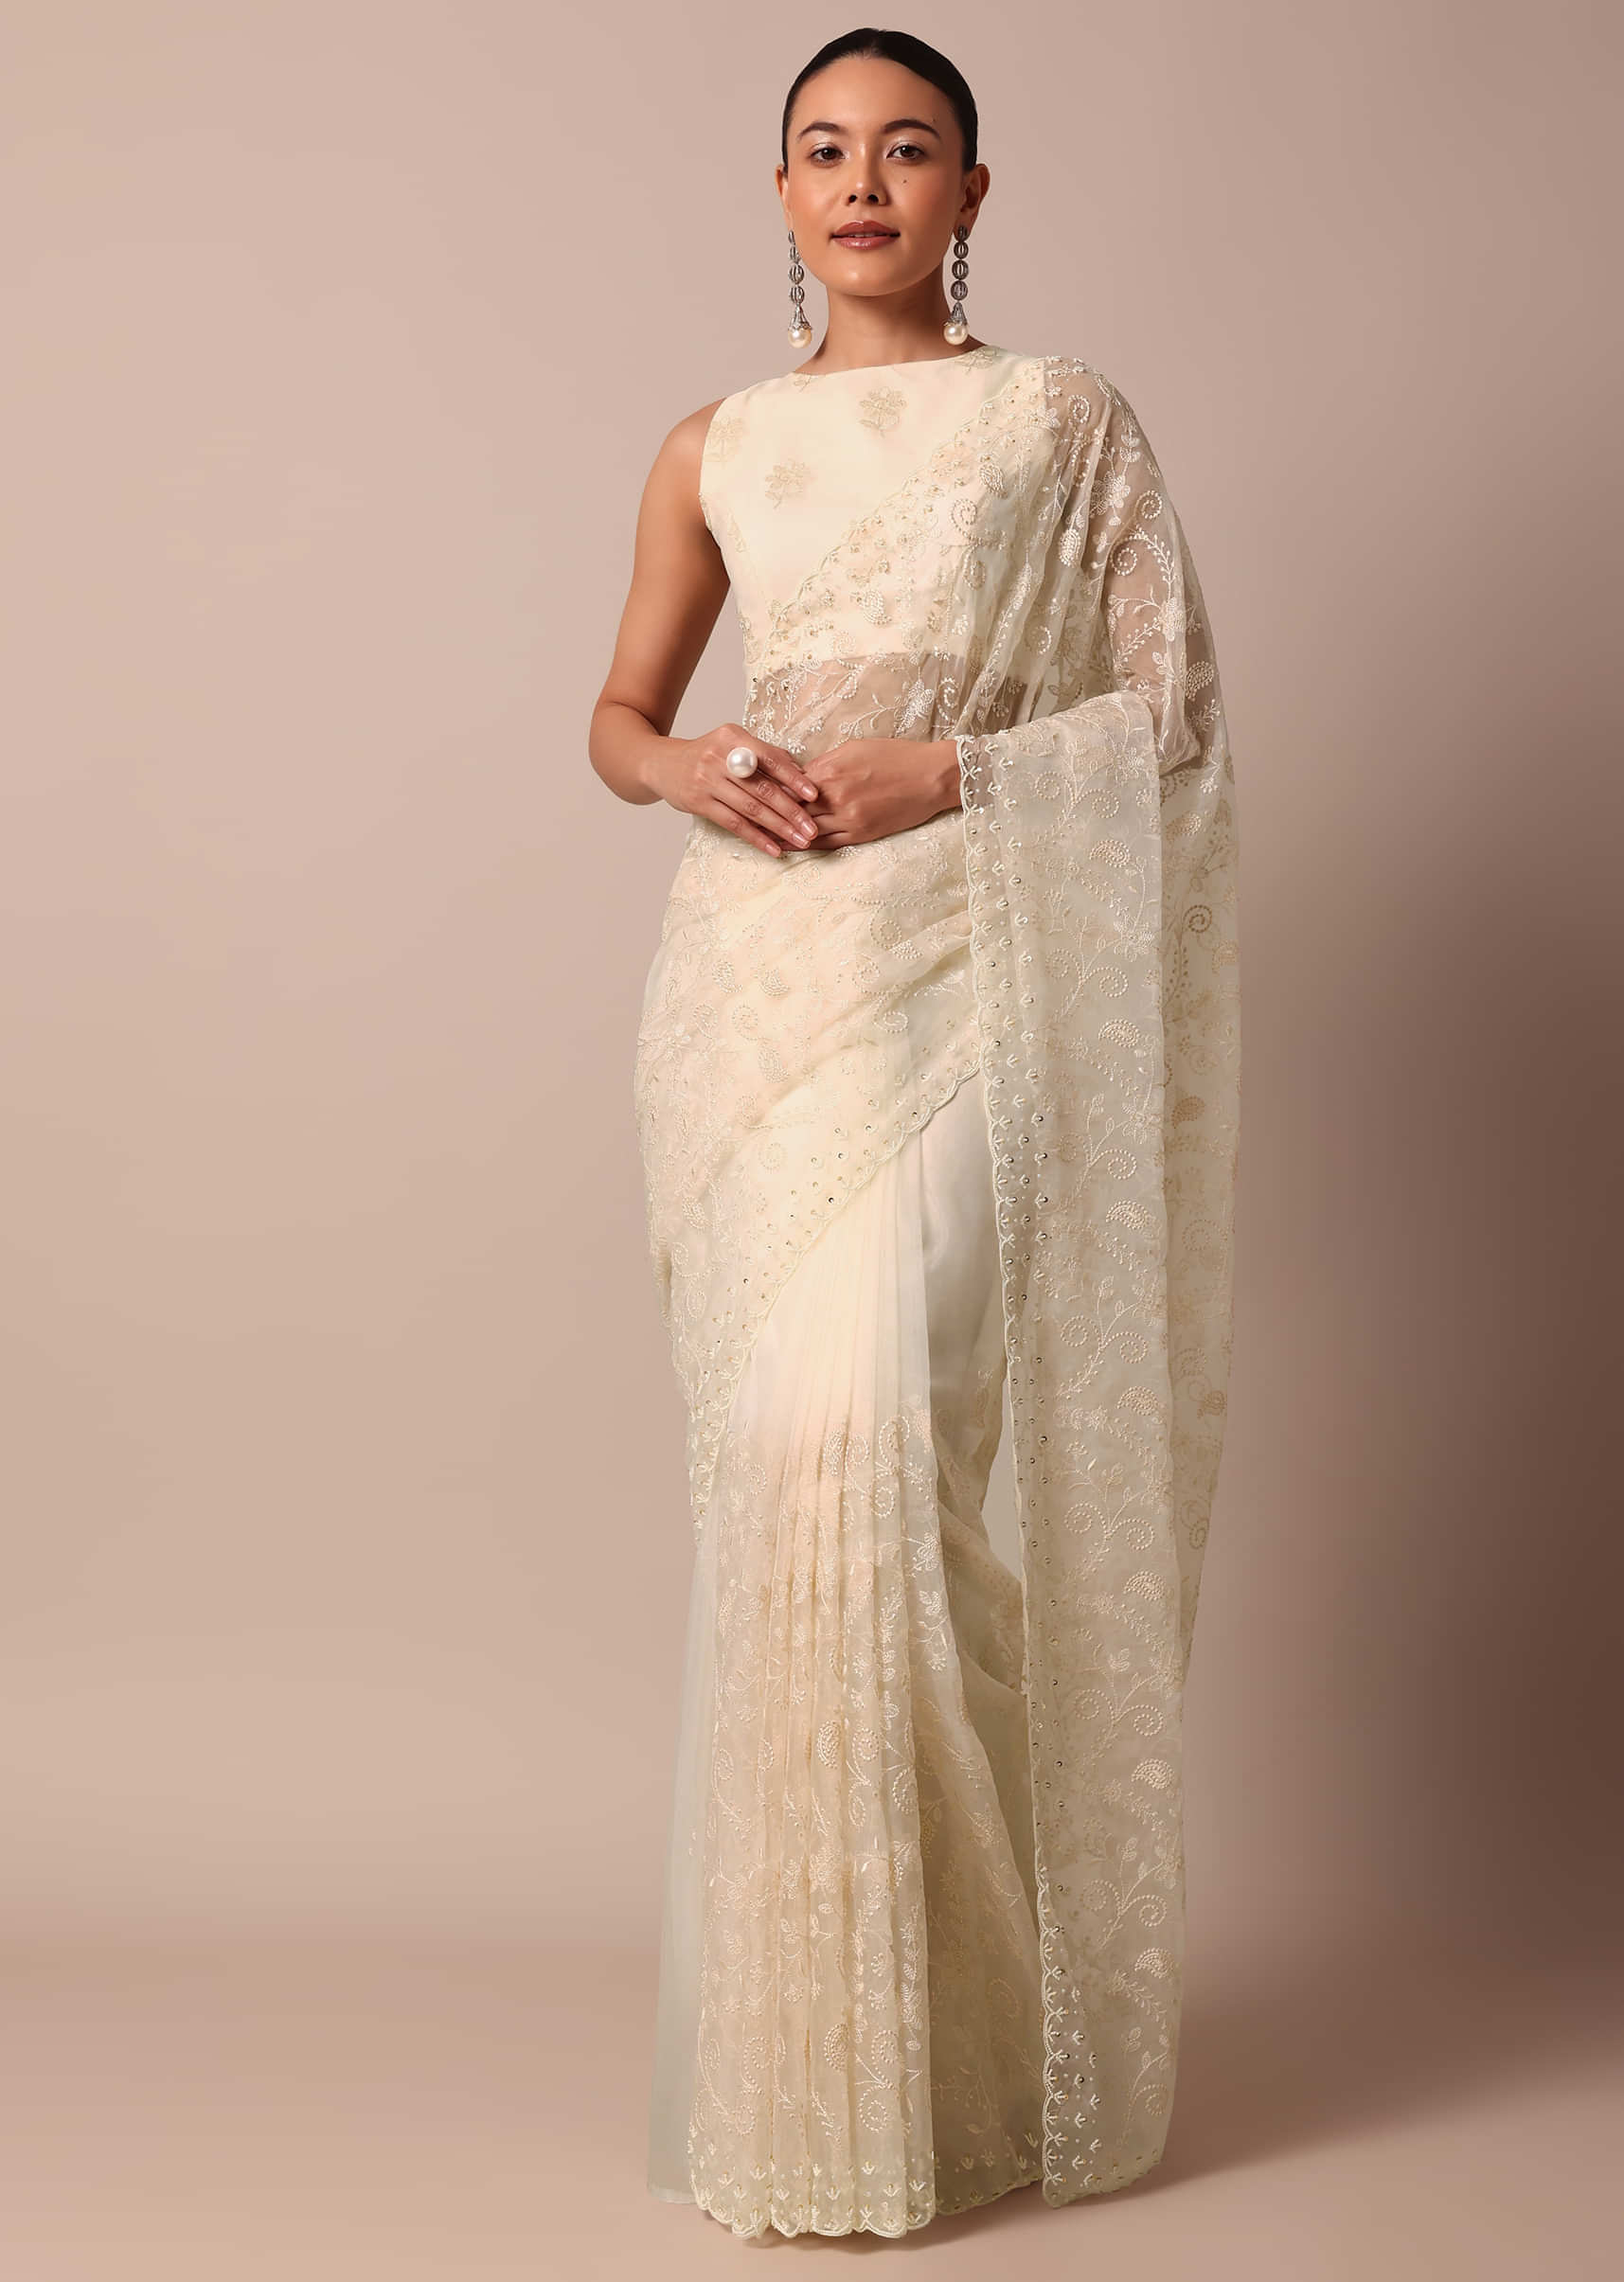 Soft Silk Saree Collection  Indian beauty saree, Stylish sarees